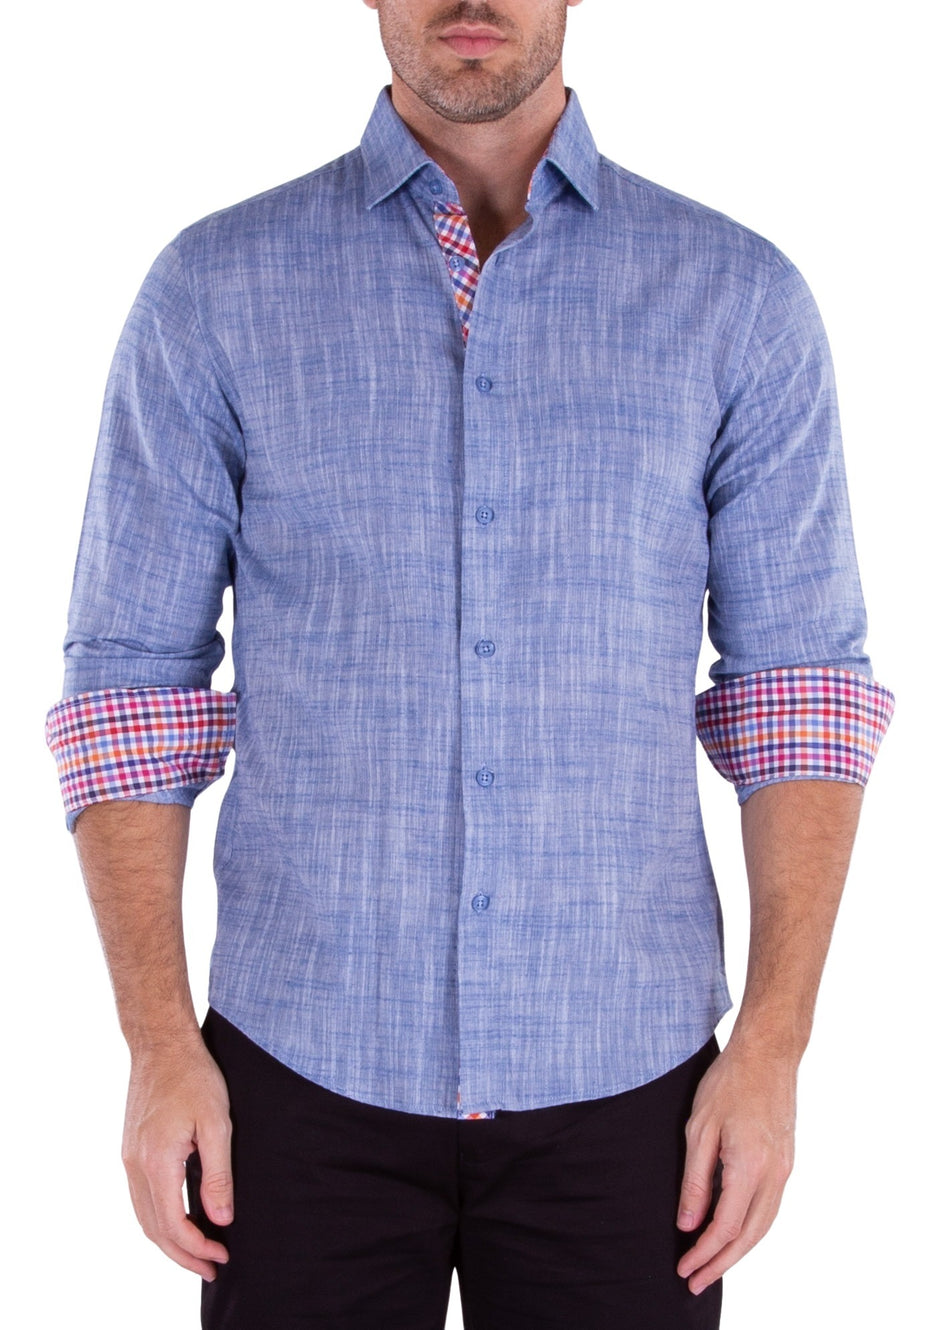 202238 - Men's Blue Button Up Long Sleeve Dress Shirt